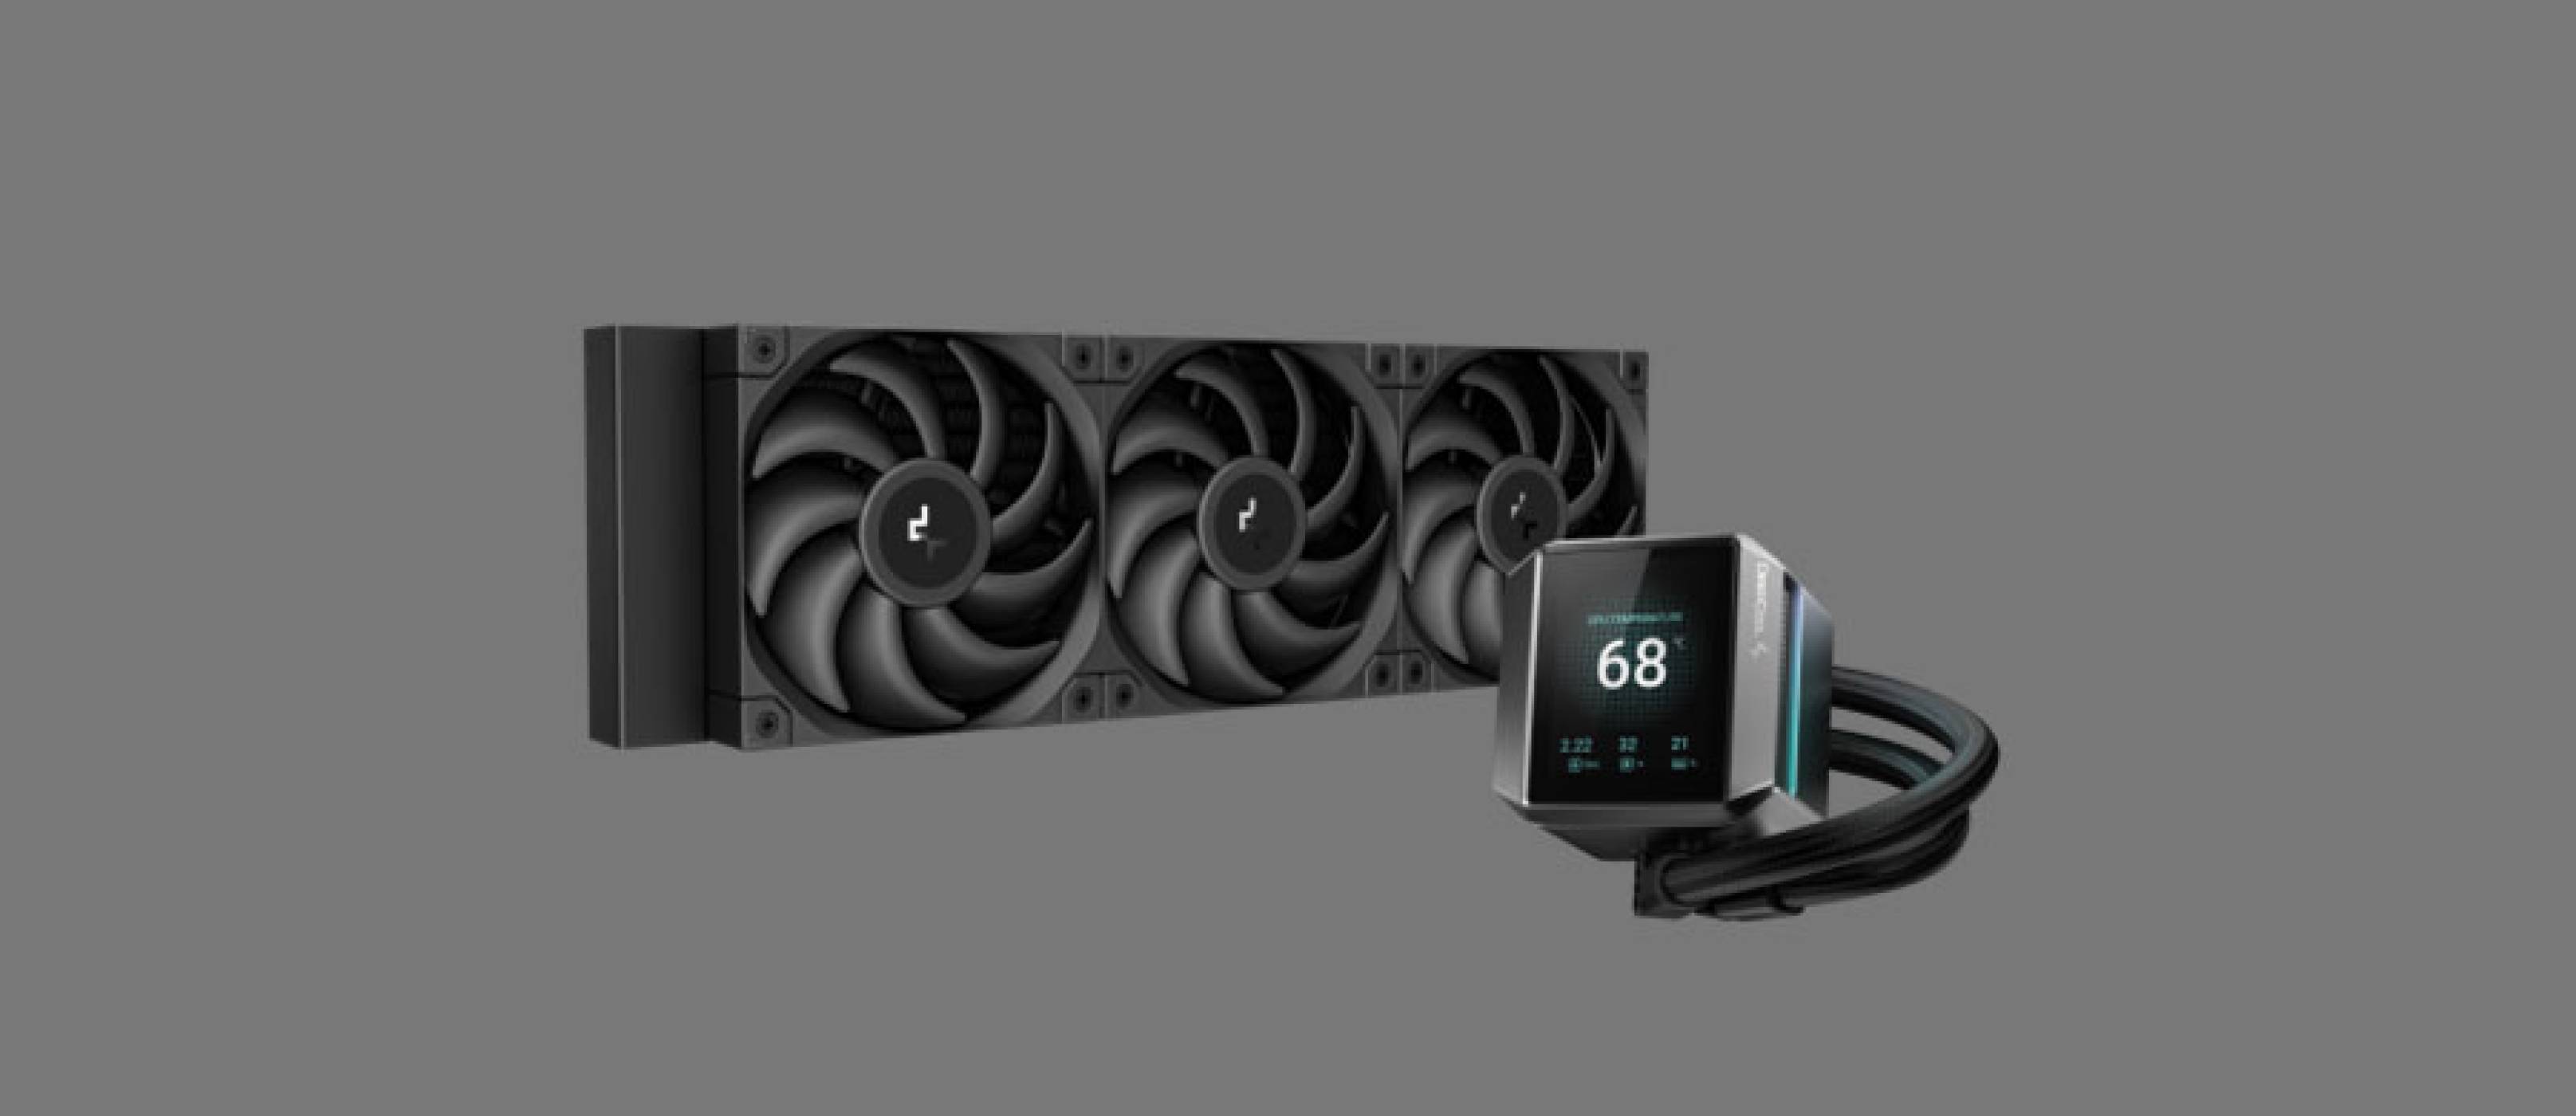 DeepCool представи течните охладители MYSTIQUE с впечатляващ LCD екран и технология от следващо поколение